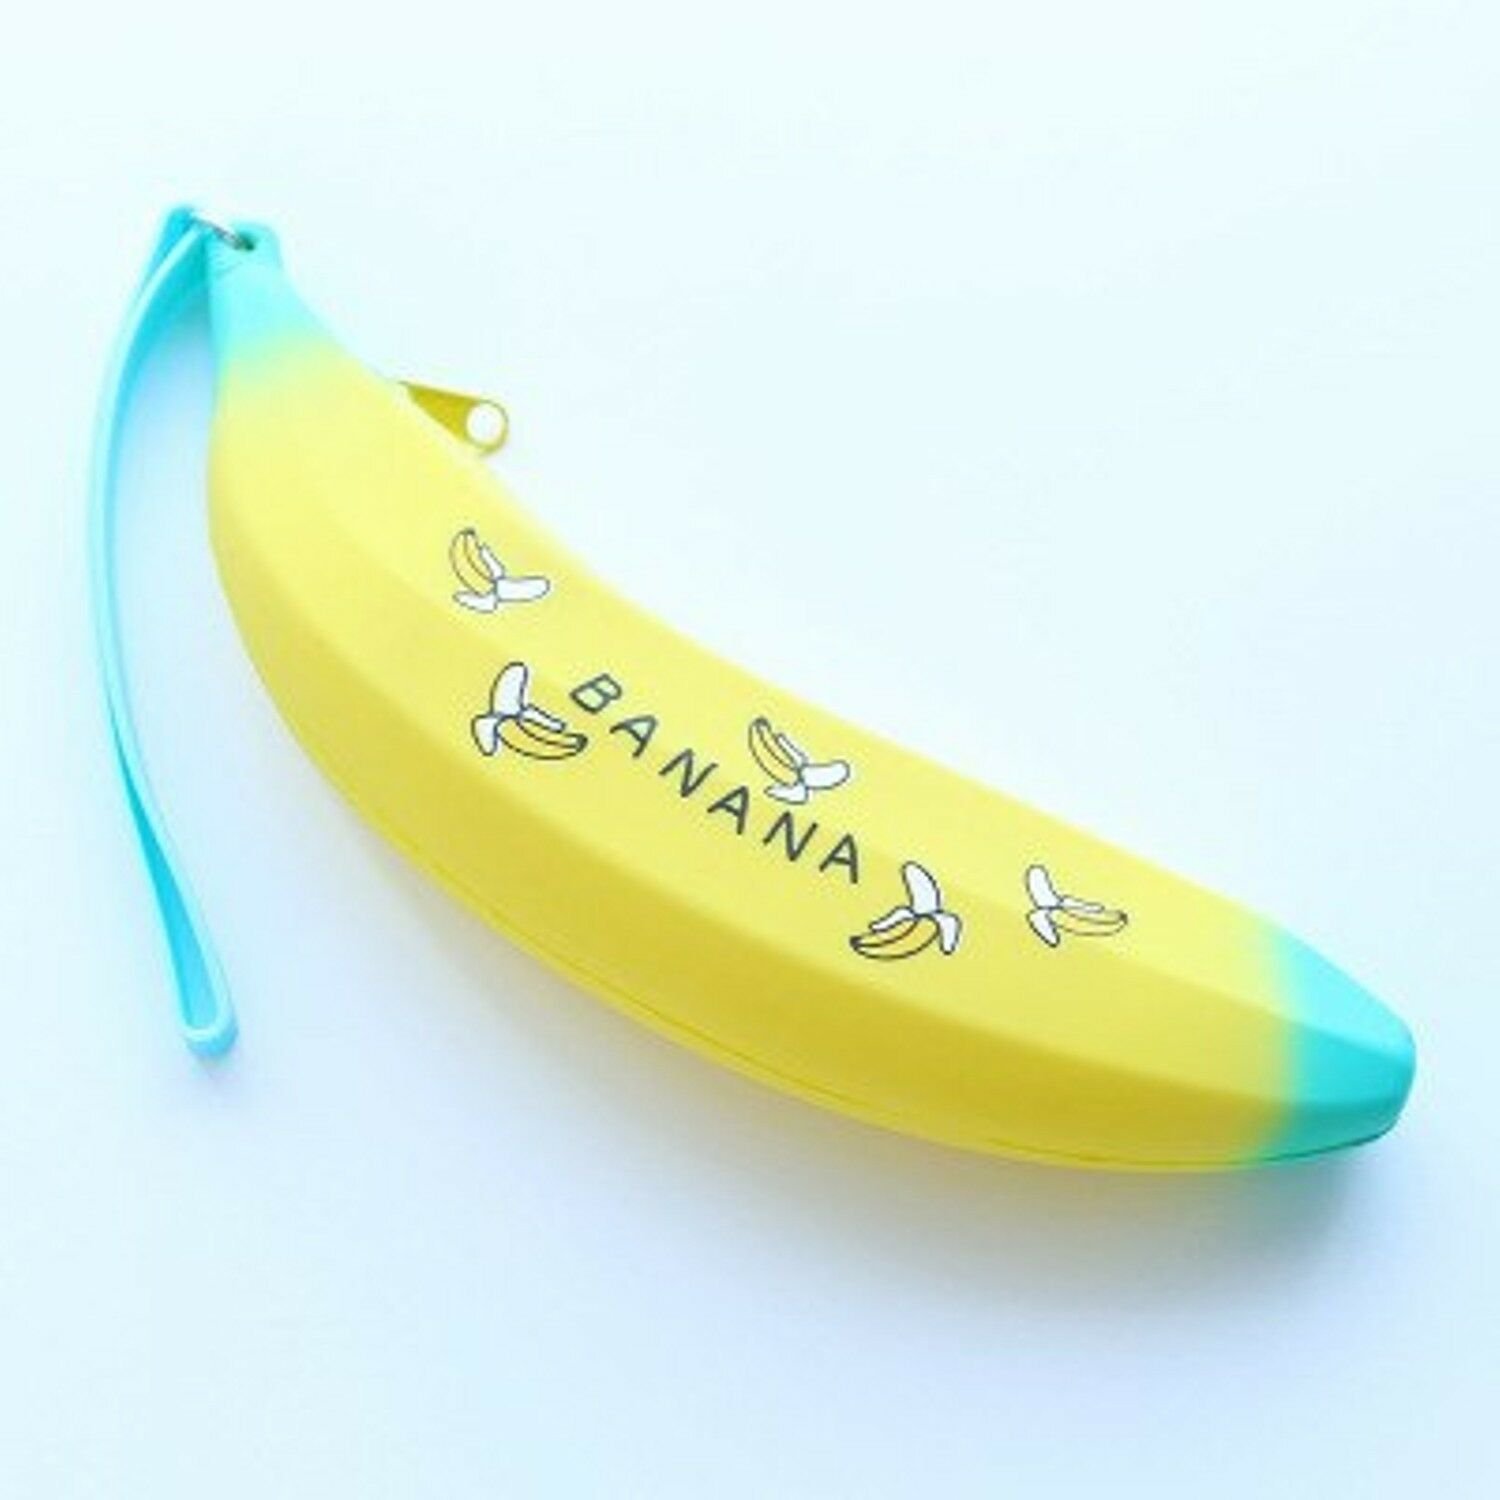 Пенал банан силиконовый. Пенал с карандашами с банан. Био банана пенсил. Пенал "бананы" 215*100 мм. Банана пенсил